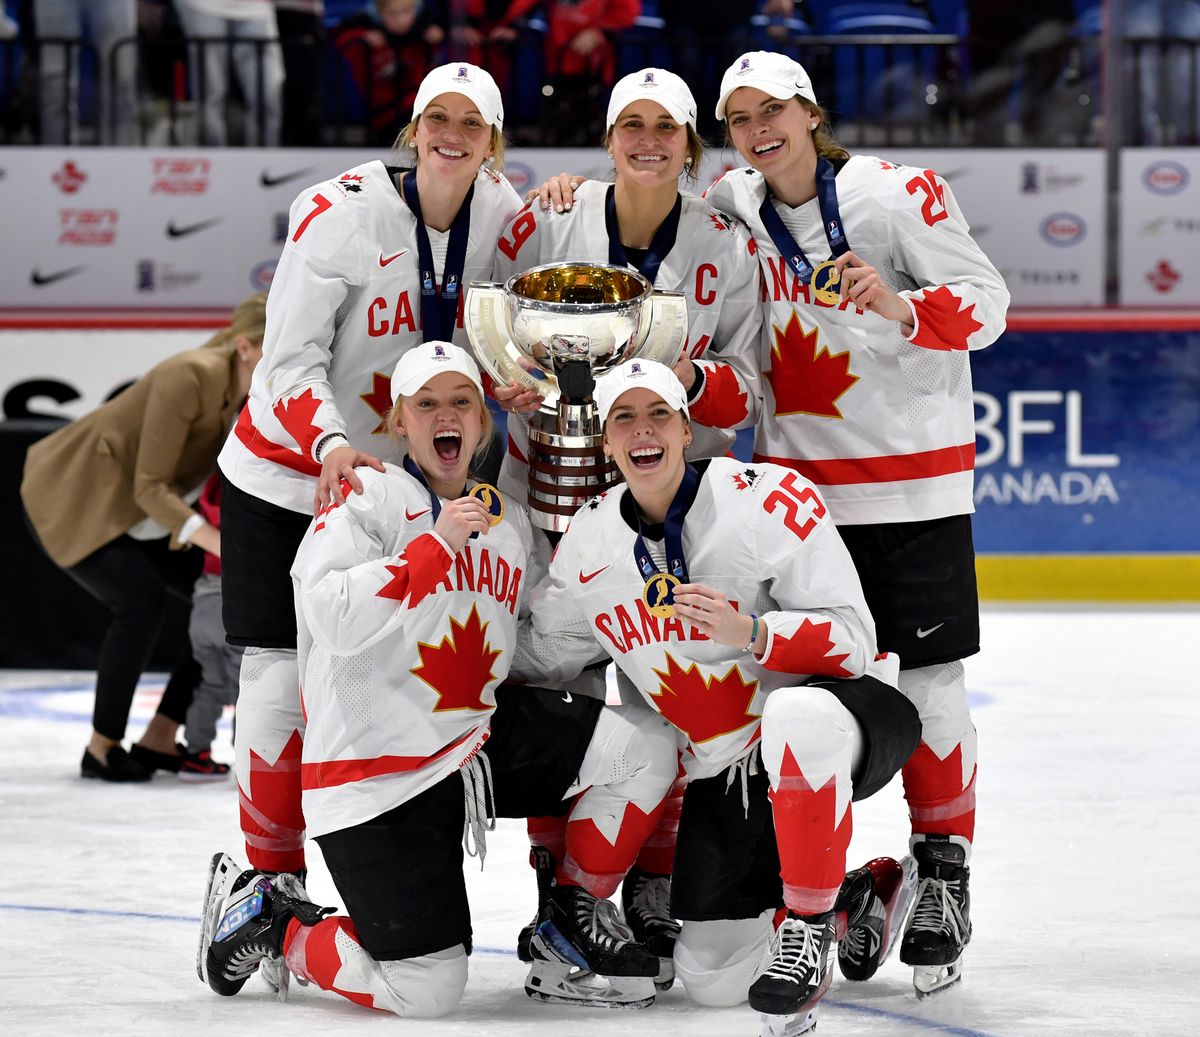 kanadierinnen holen gold in dramatischem final